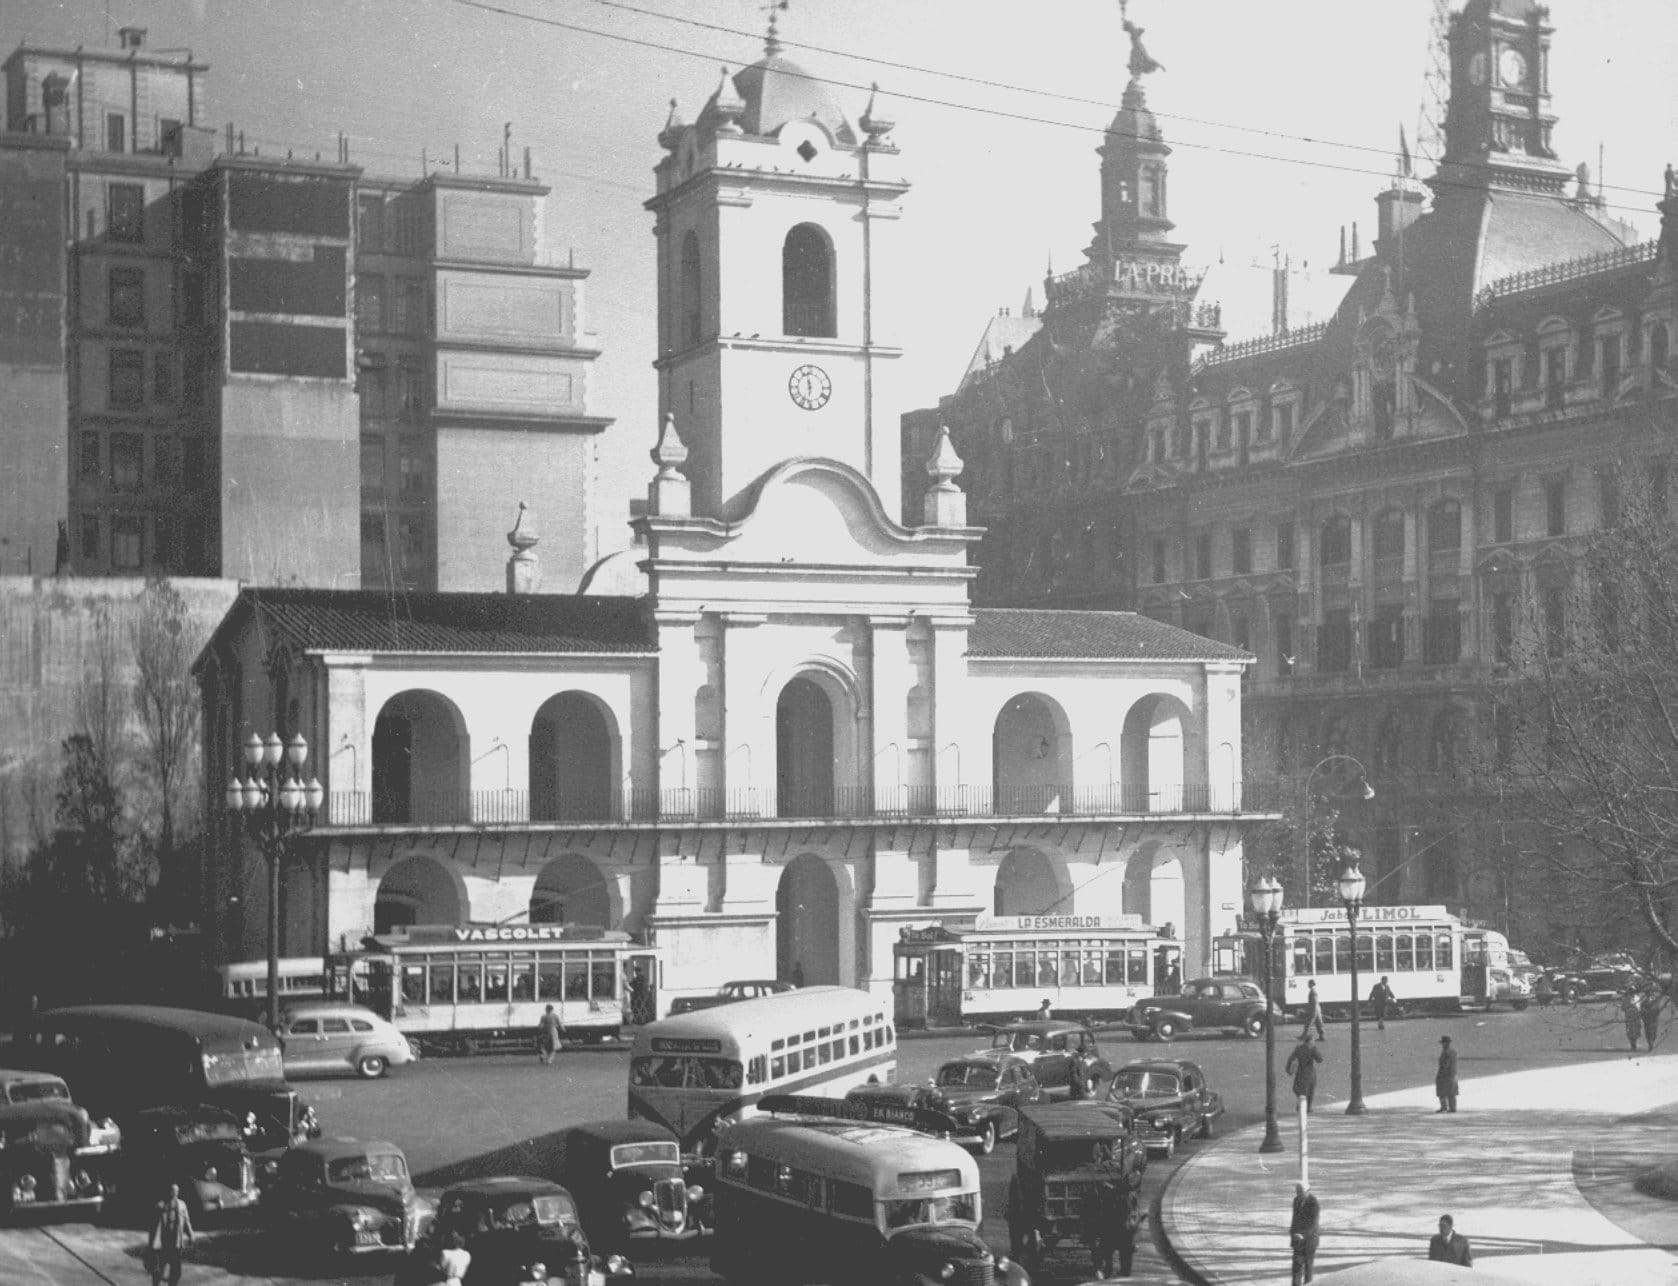 Buenos Aires in 1954 - Cabildo